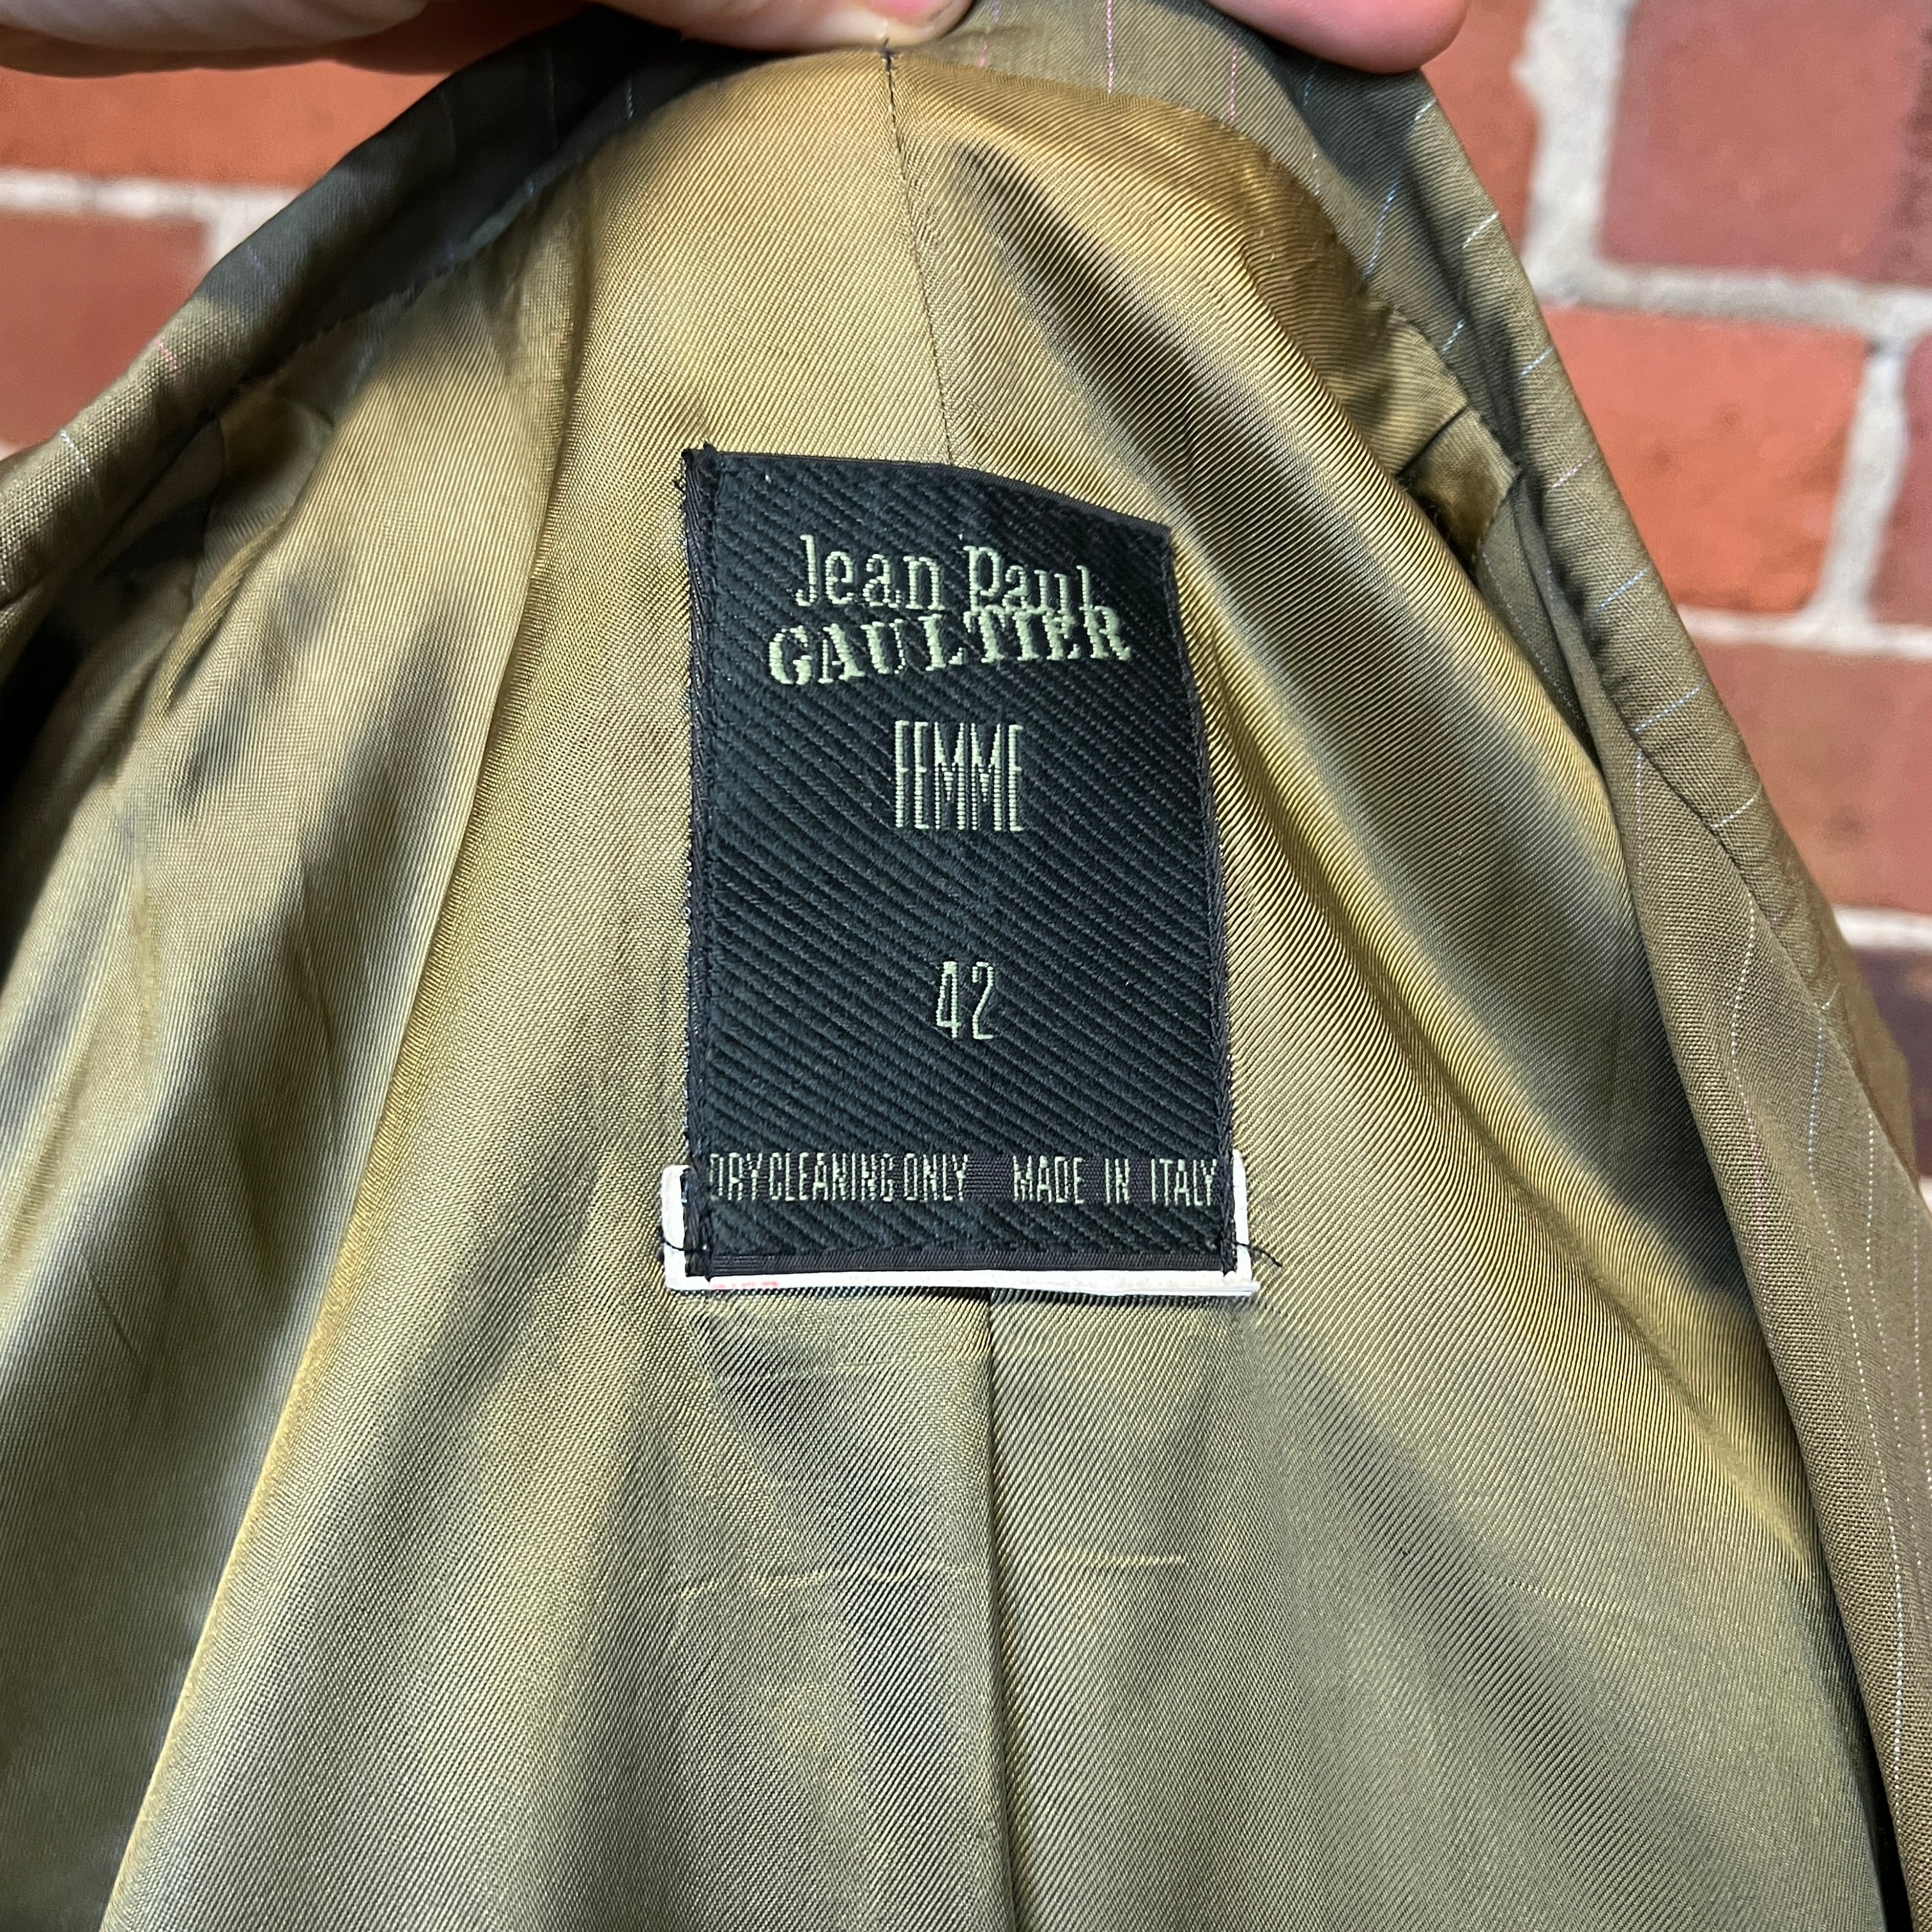 JEAN PAUL GAULTIER 1990s pinstriped jacket